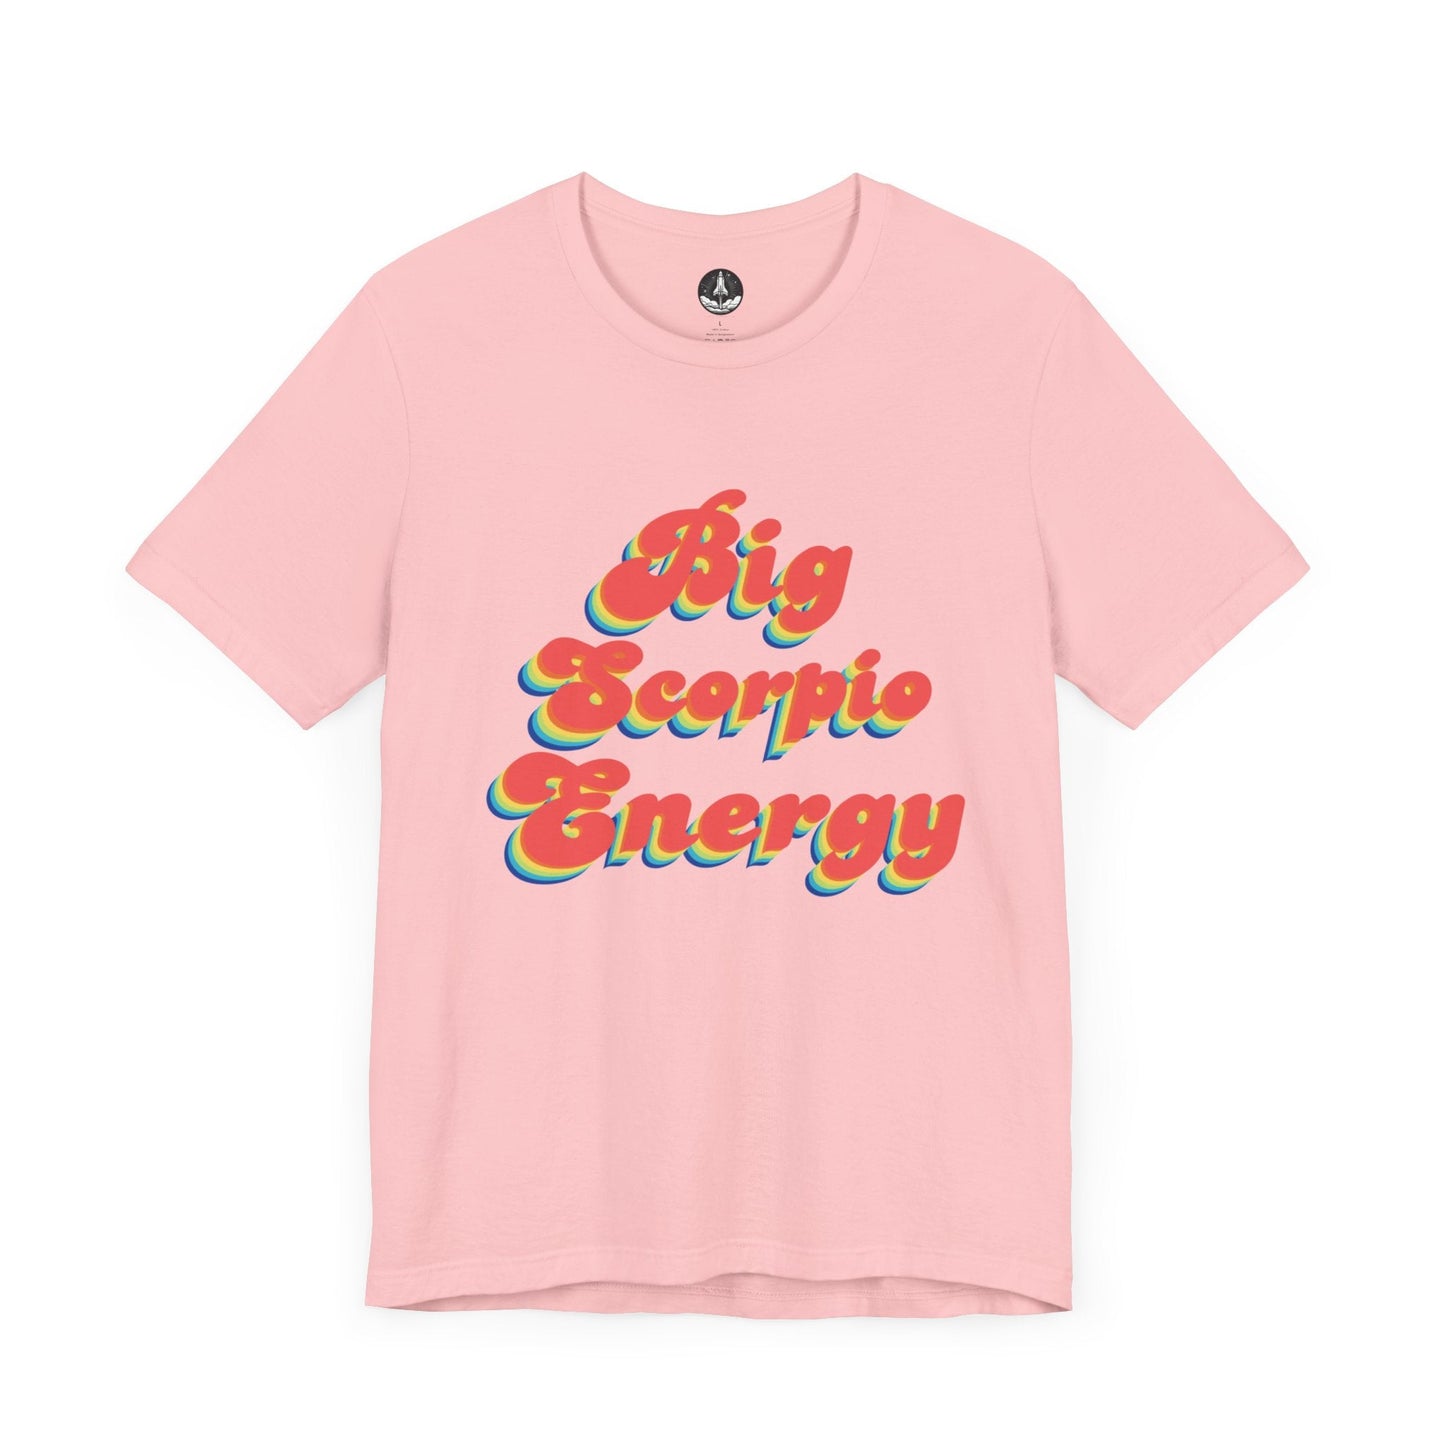 T-Shirt Pink / S Big Scorpio Energy T-Shirt